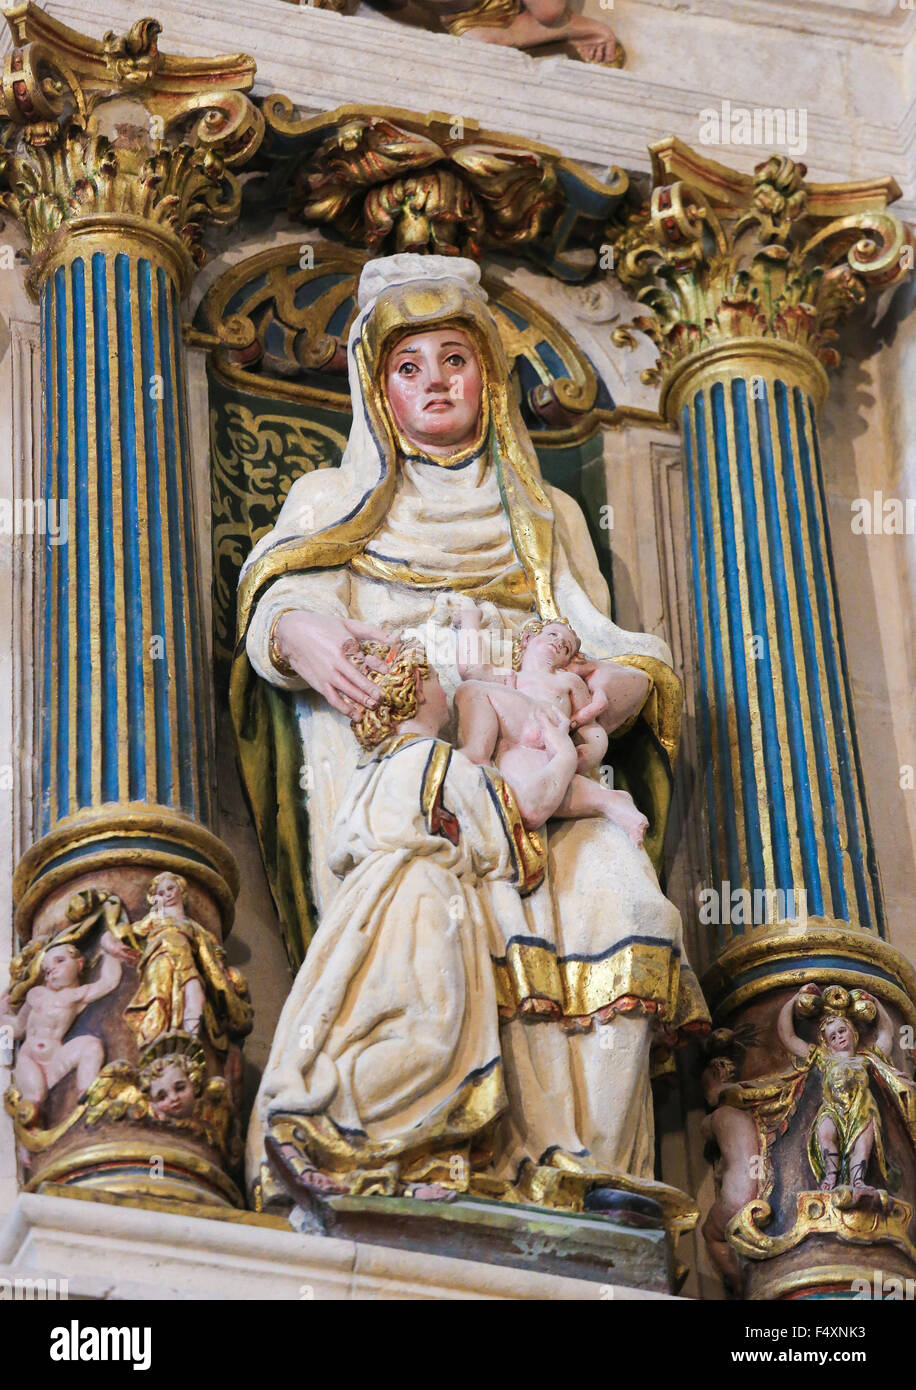 BURGOS, España - 13 de agosto de 2014: Estatua policromada de la Virgen con el niño en la Catedral de Burgos, Castilla, España Foto de stock